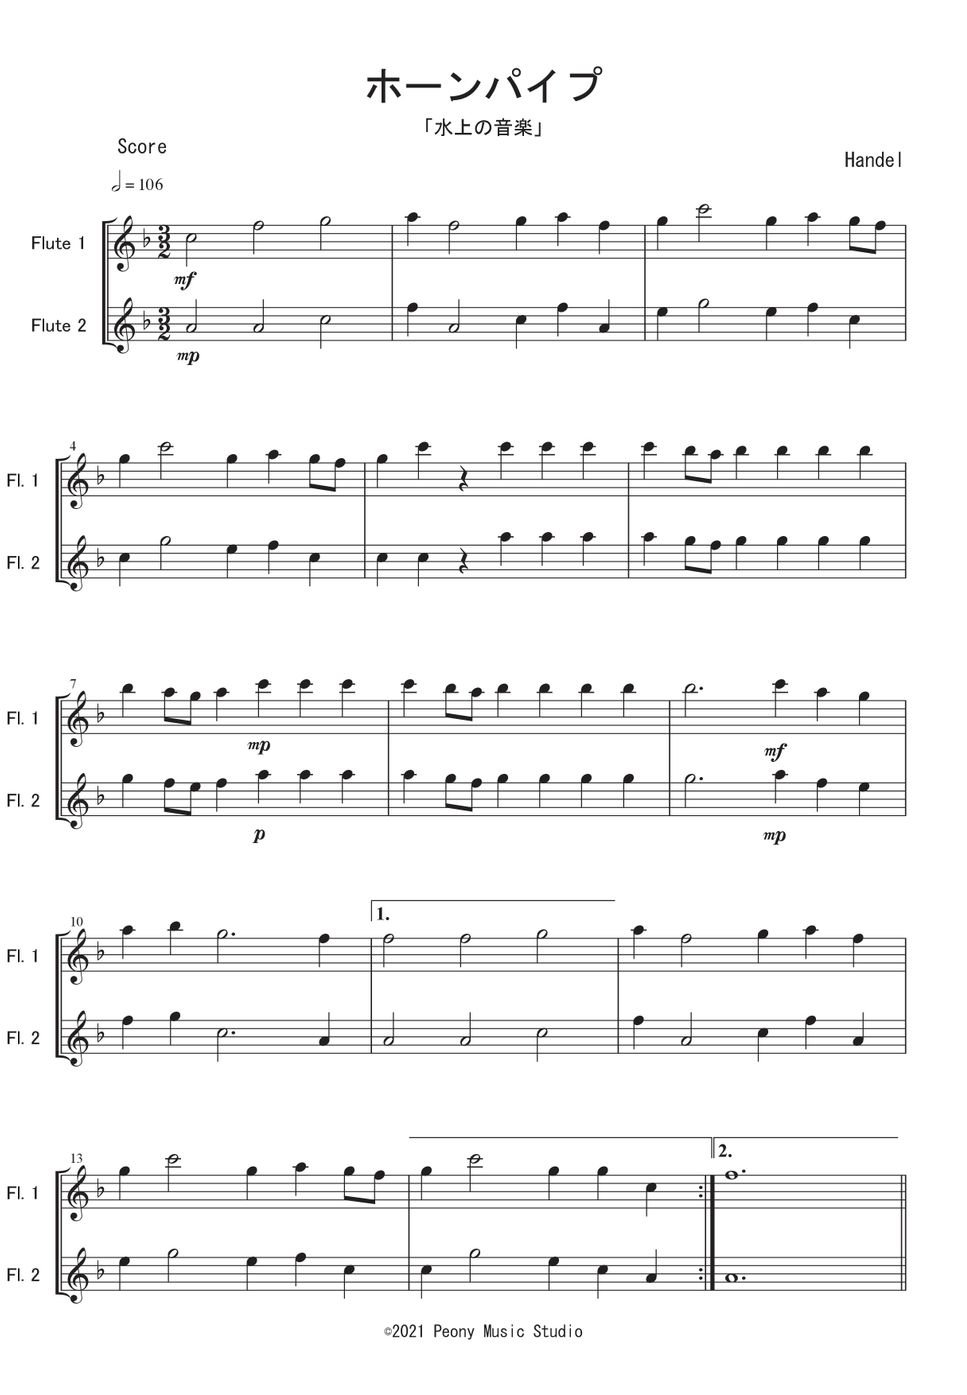 ヘンデル - 「水上の音楽」より ホーンパイプ (Fl二重奏) by Peony